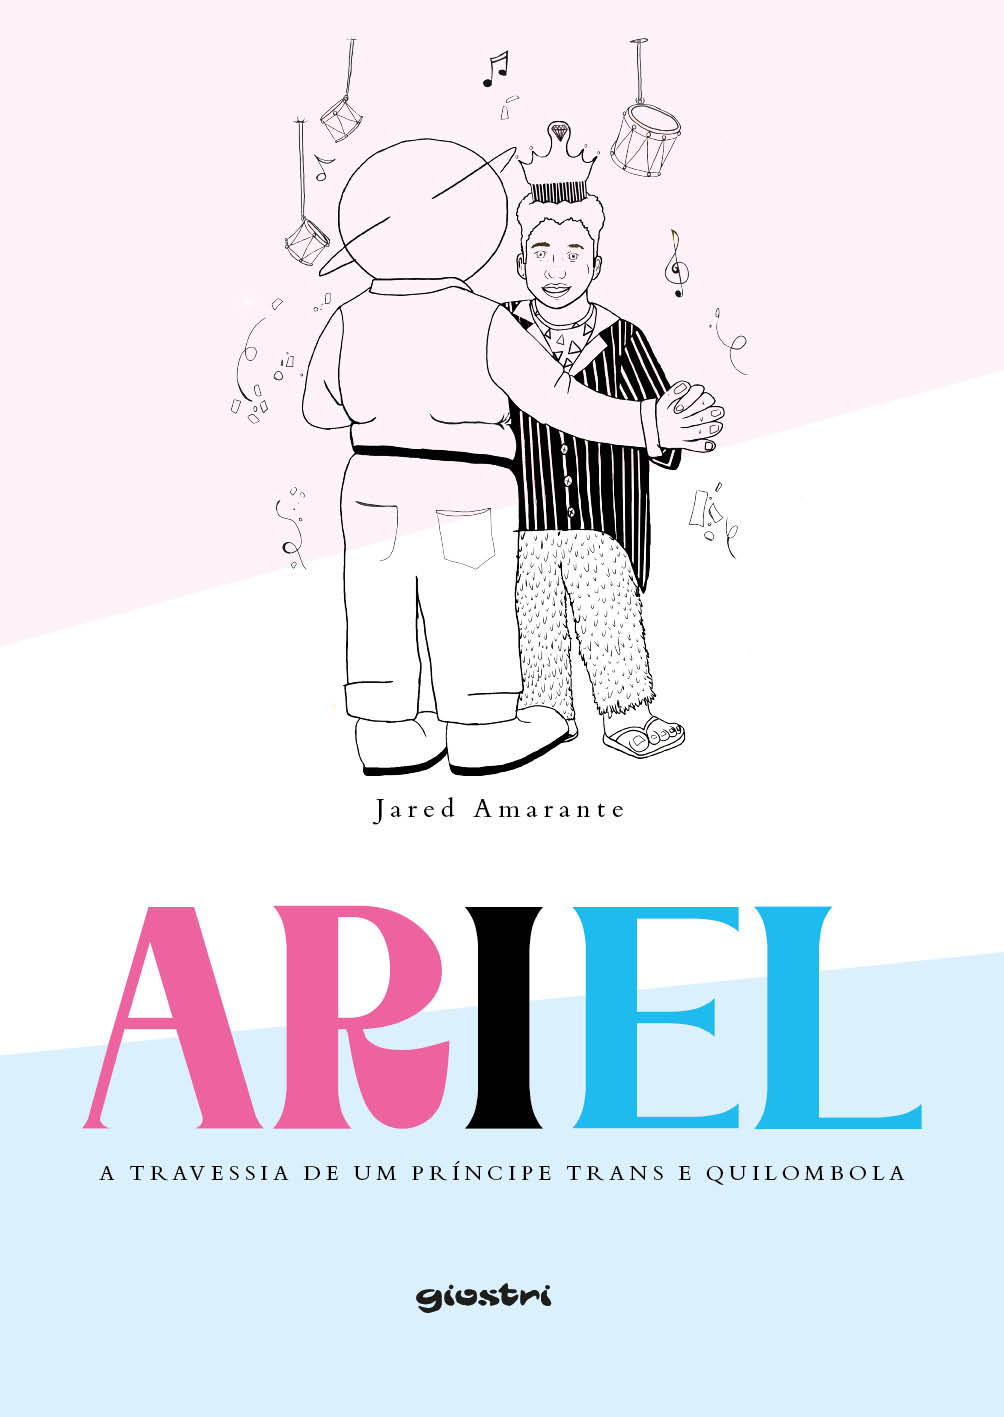 Jared Amarante - Ariel – a travessia de um príncipe trans e quilombola